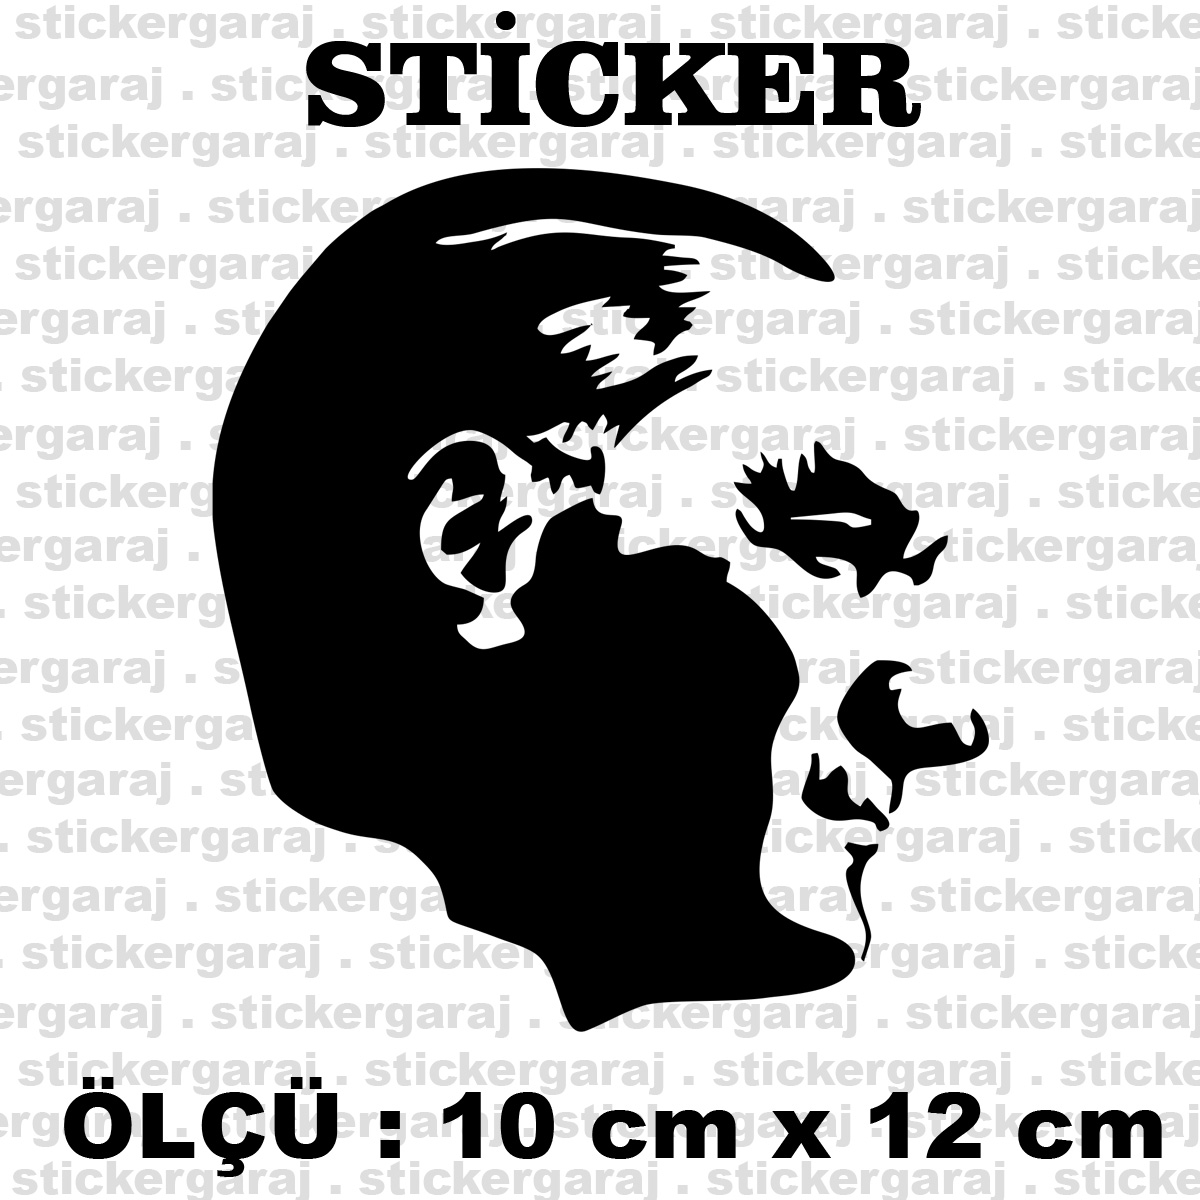 atam 10 12 - Mustafa kemal atatürk sticker